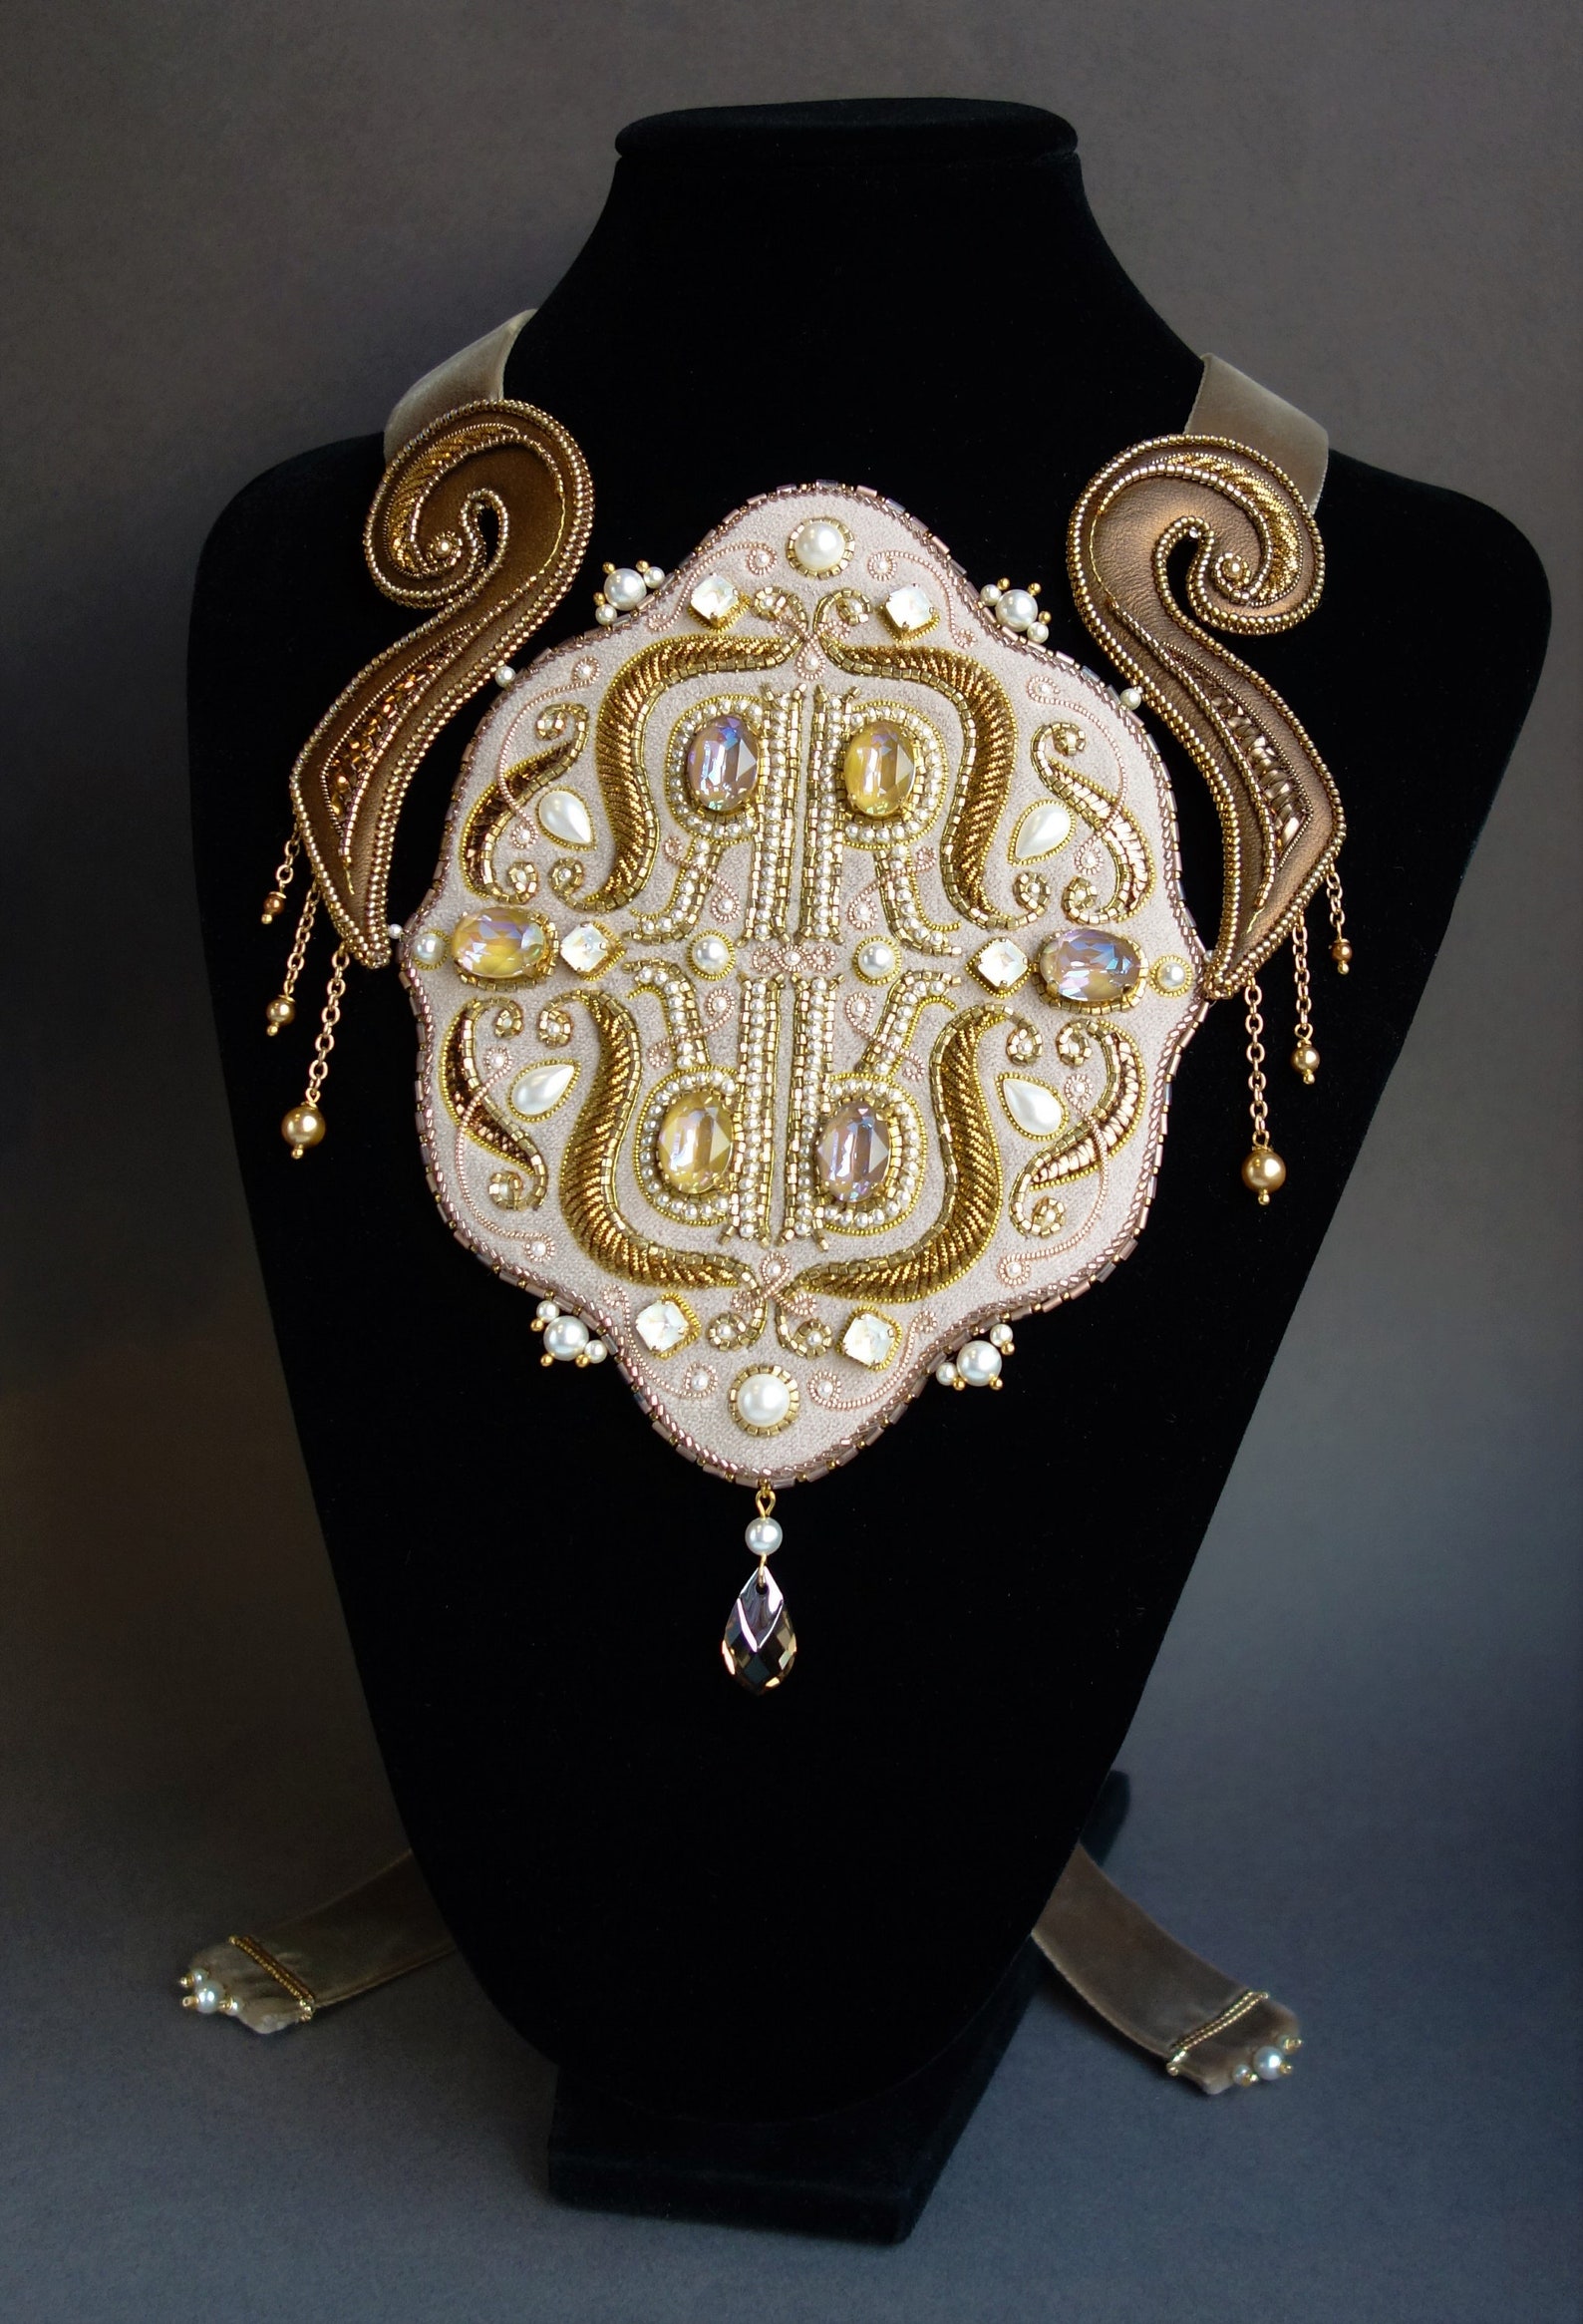 Necklace LOUIS XIV Gift statement necklaces Plus size fashion | Etsy